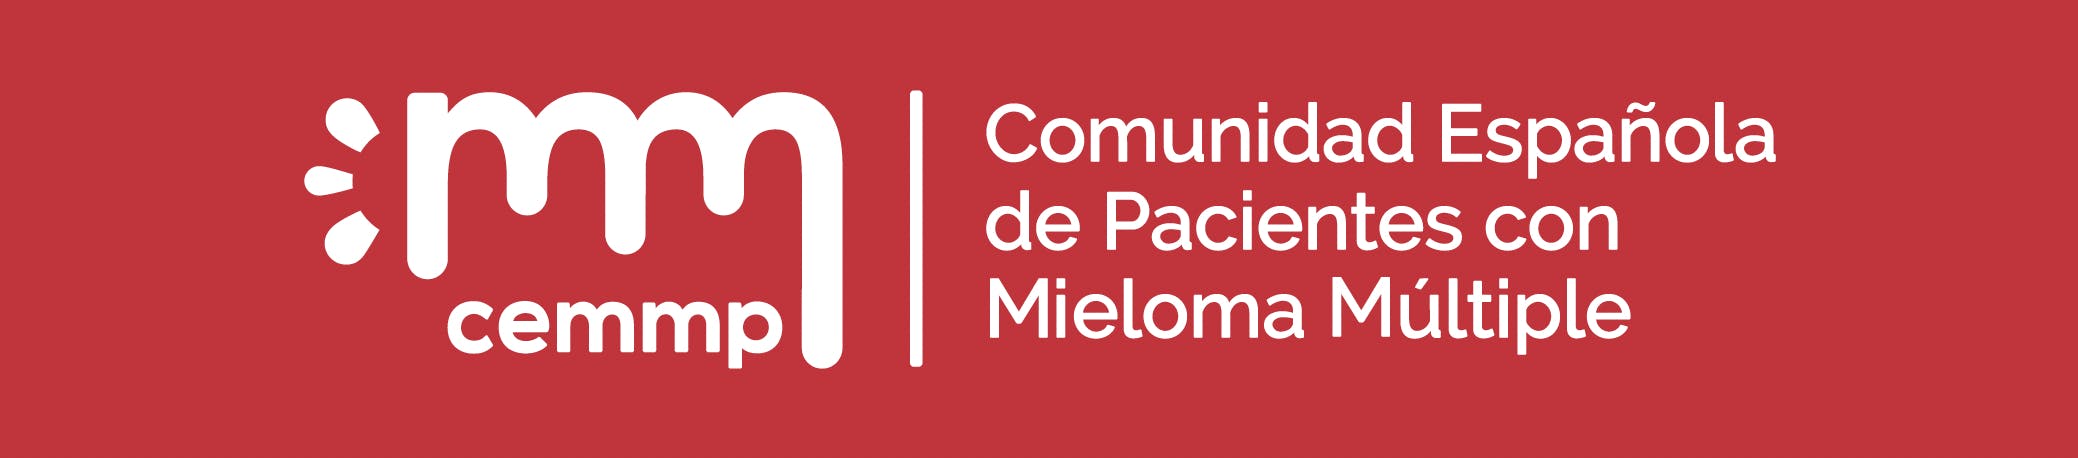 Comunidad Española de Pacientes con Mieloma Múltiple Logo